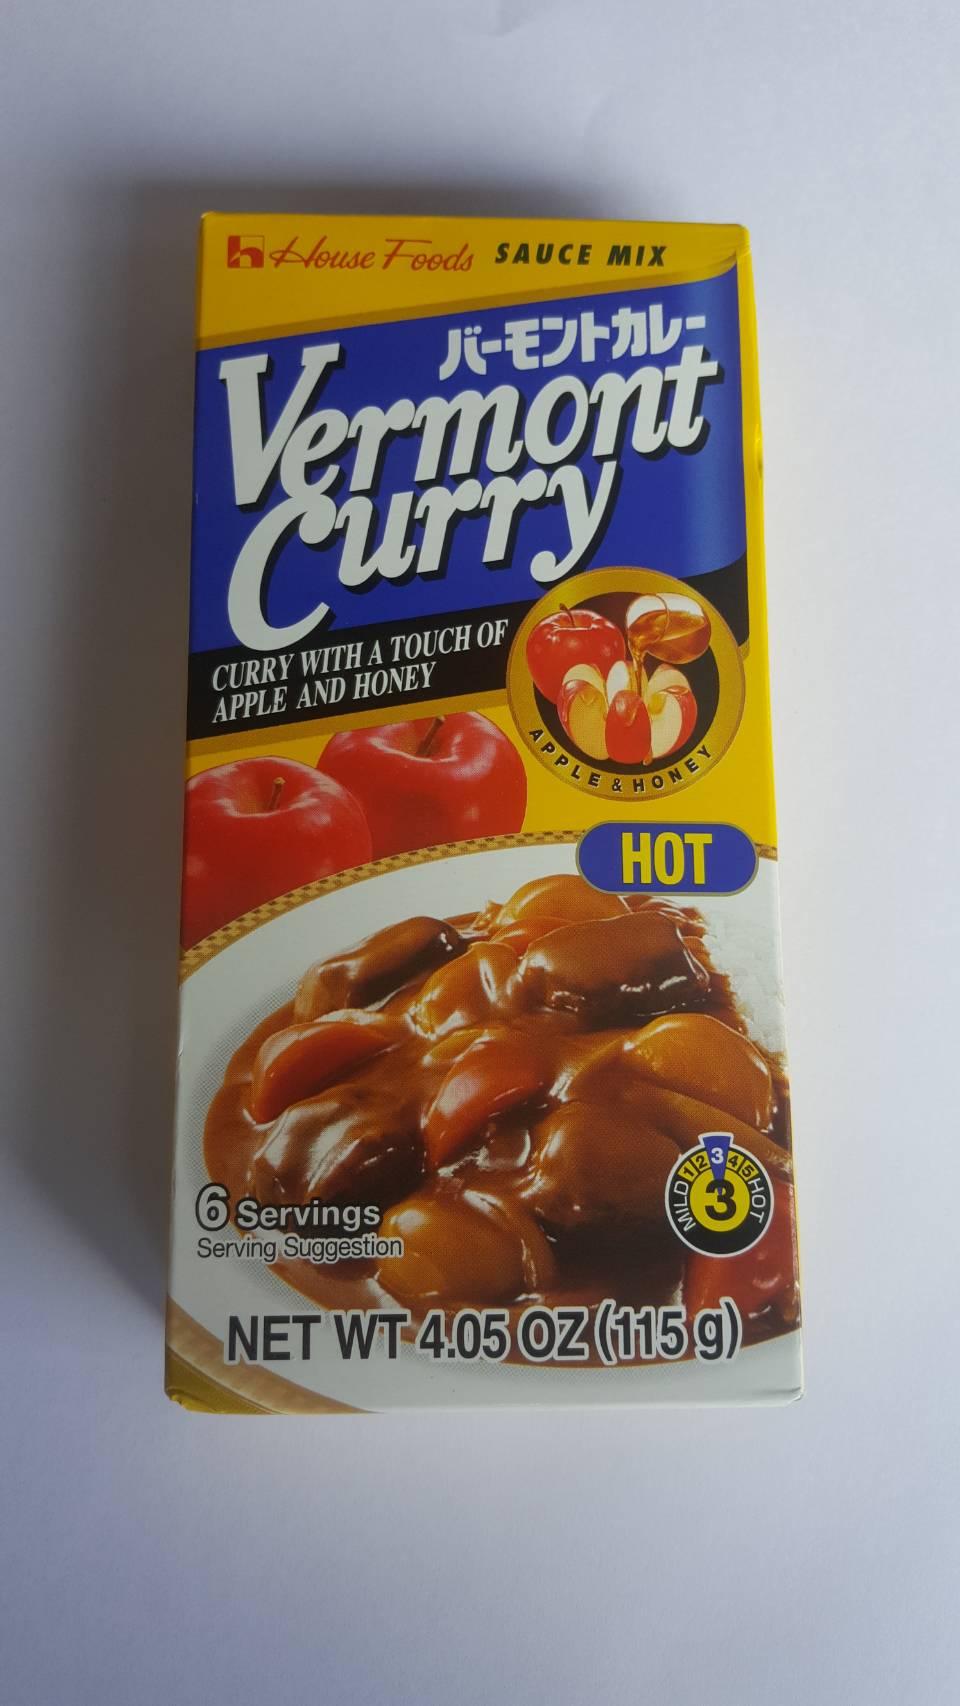 เครื่องแกงกะหรี่ ก้อนแกงกะหรี่ ชนิดเผ็ดมาก (Vermont Curry) ขนาด 115 กรัม จากญี่ปุ่น